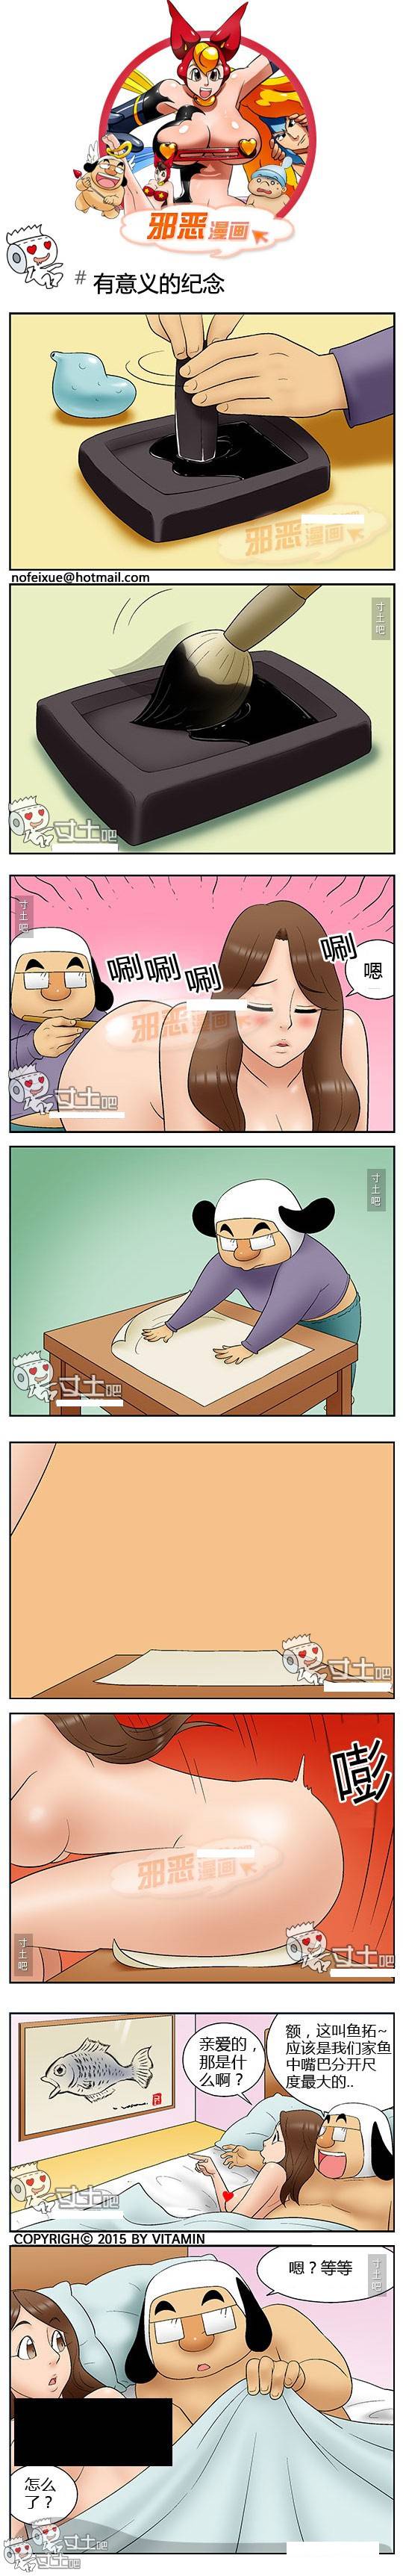 日本女生邪恶漫画图 有意义的纪念